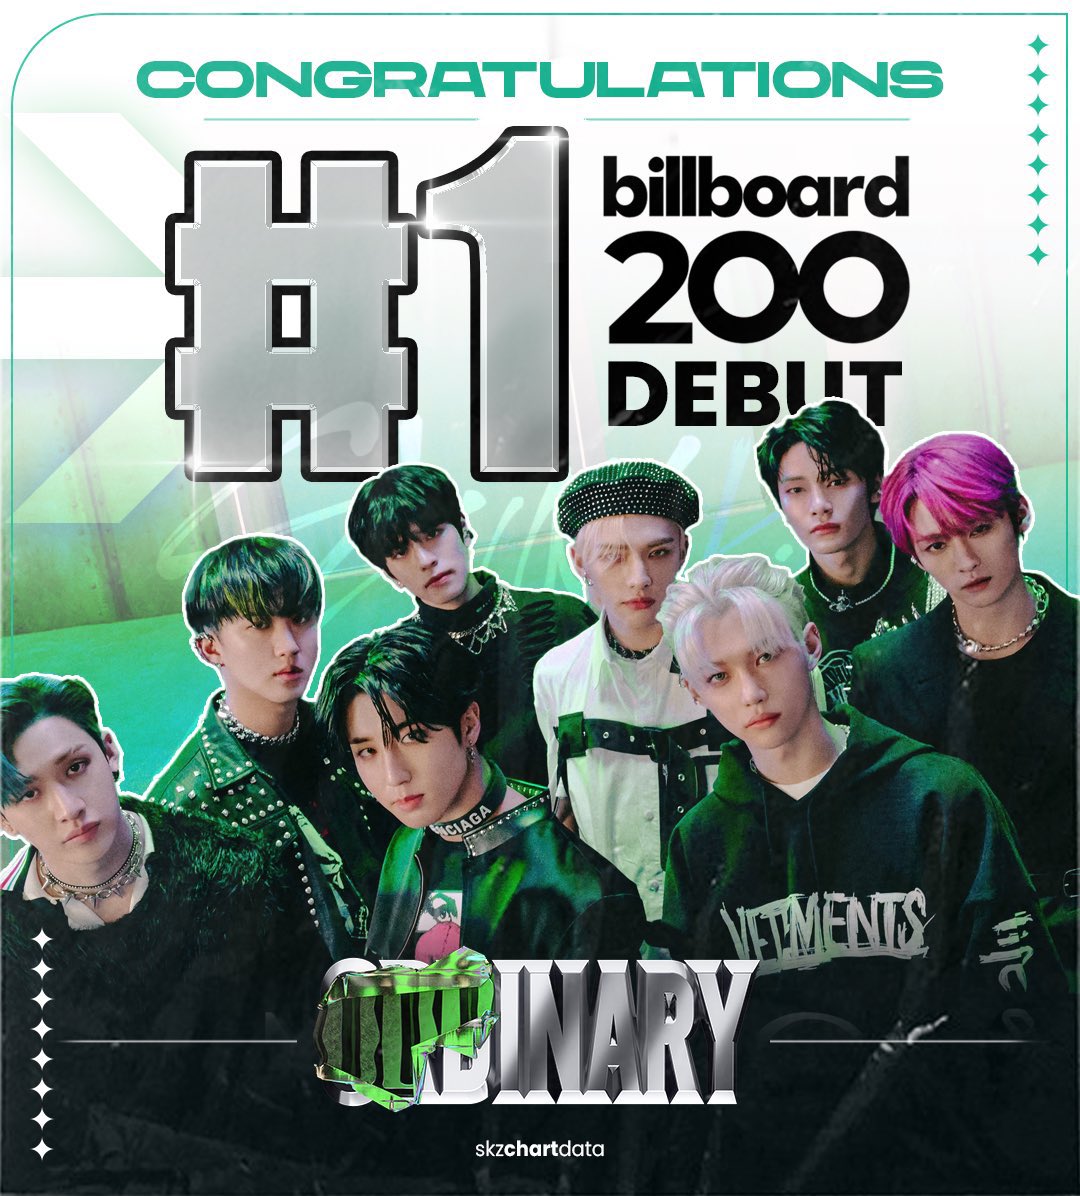 ODDINARY de Stray Kids debuta en la posición #1 de Billboard 200 2